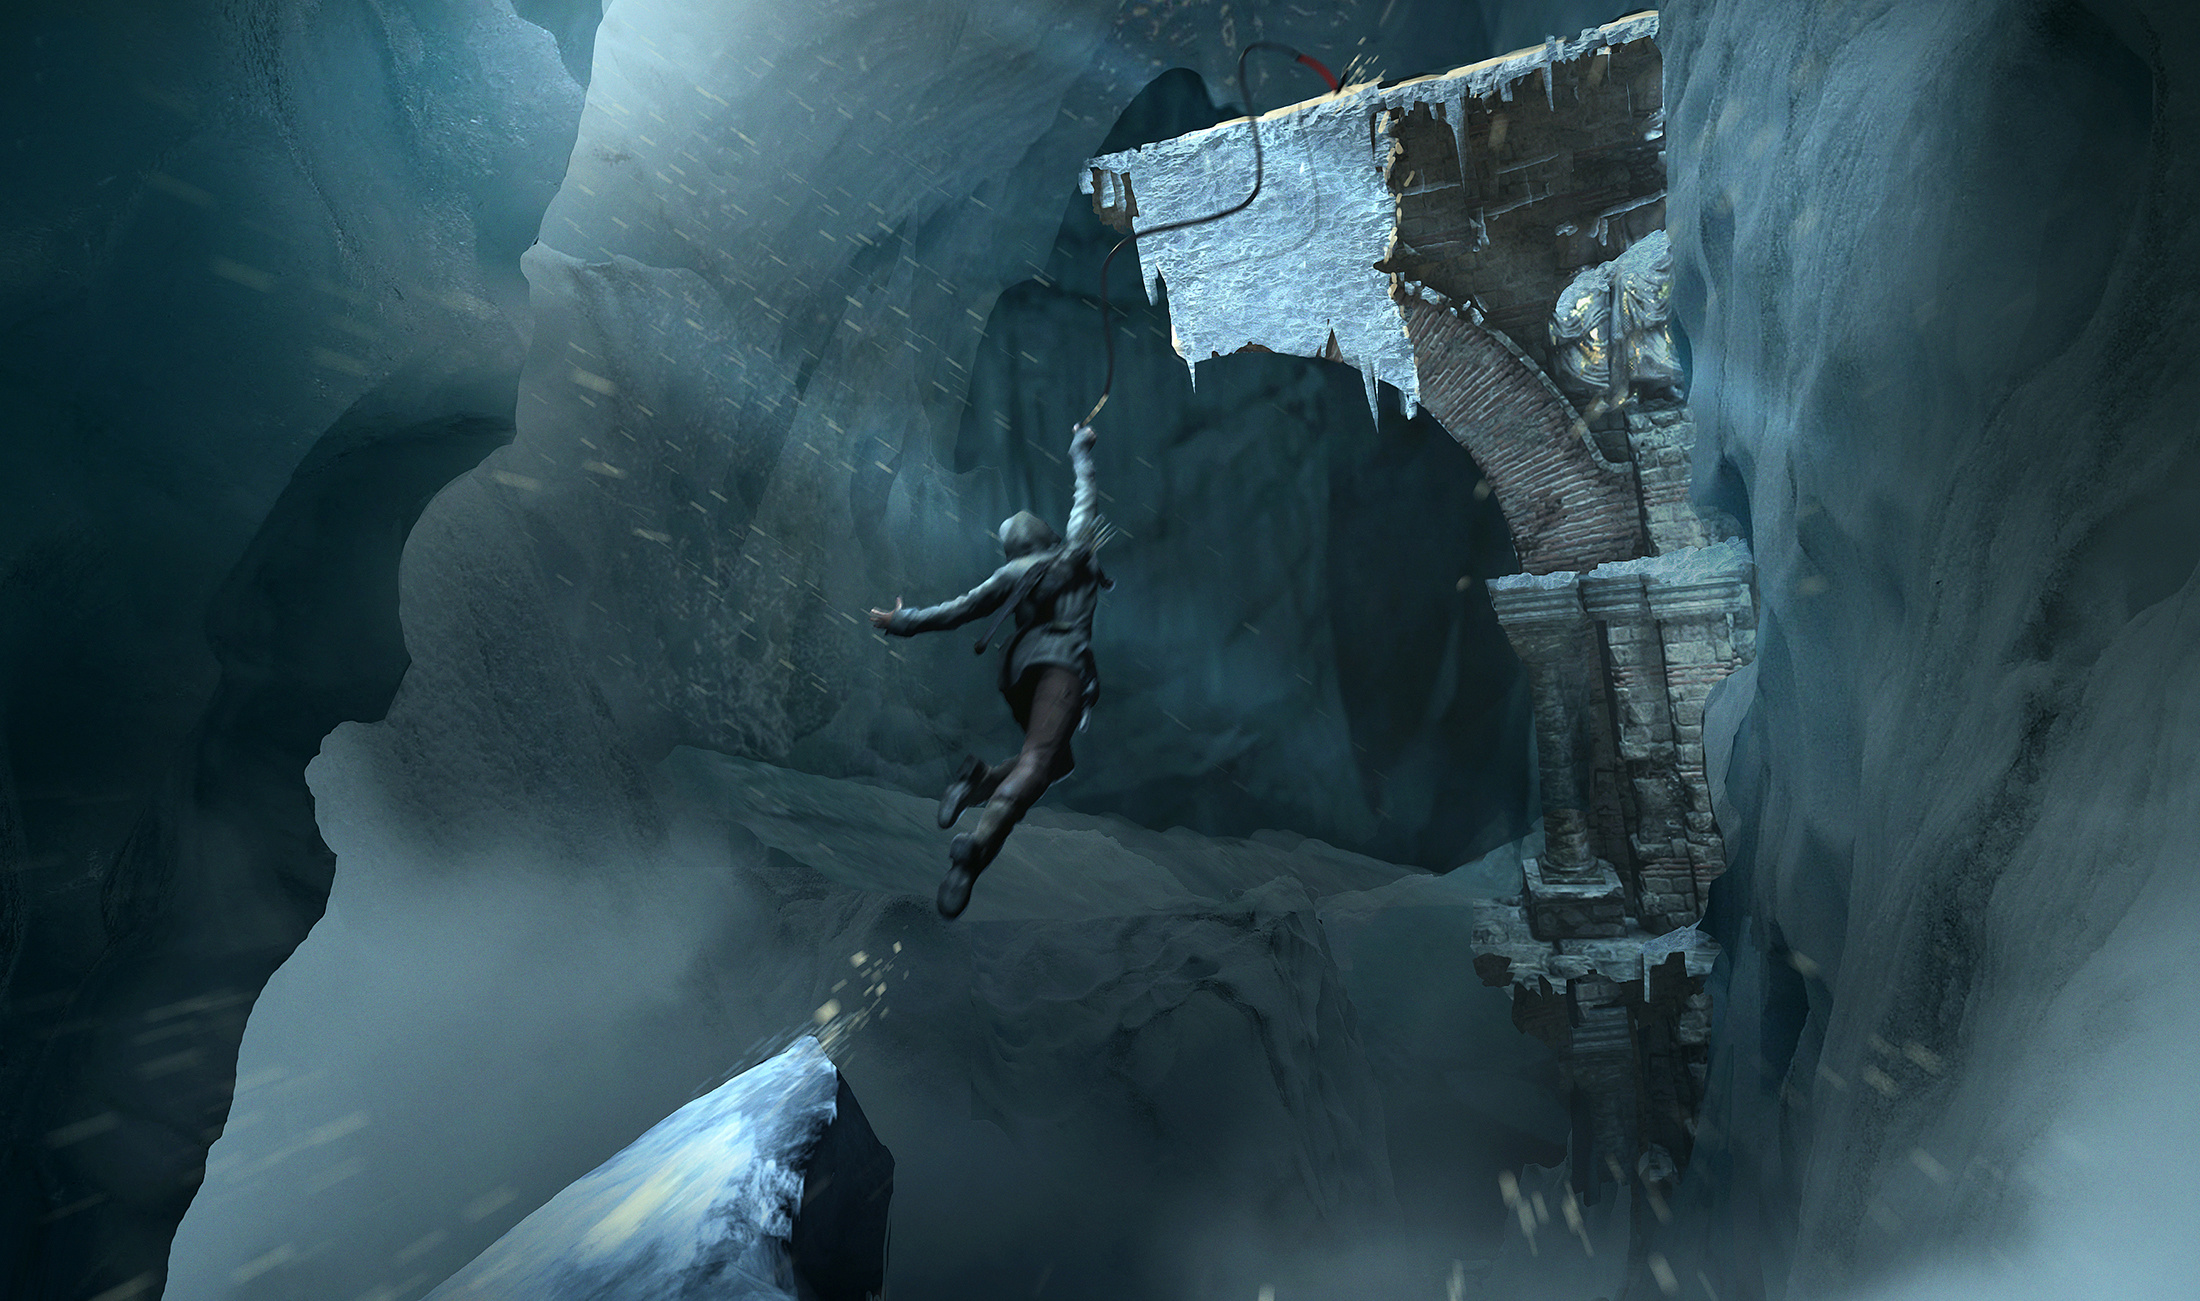 aufstieg der tomb raider tapete,action adventure spiel,bildschirmfoto,höhle,eishöhle,formation